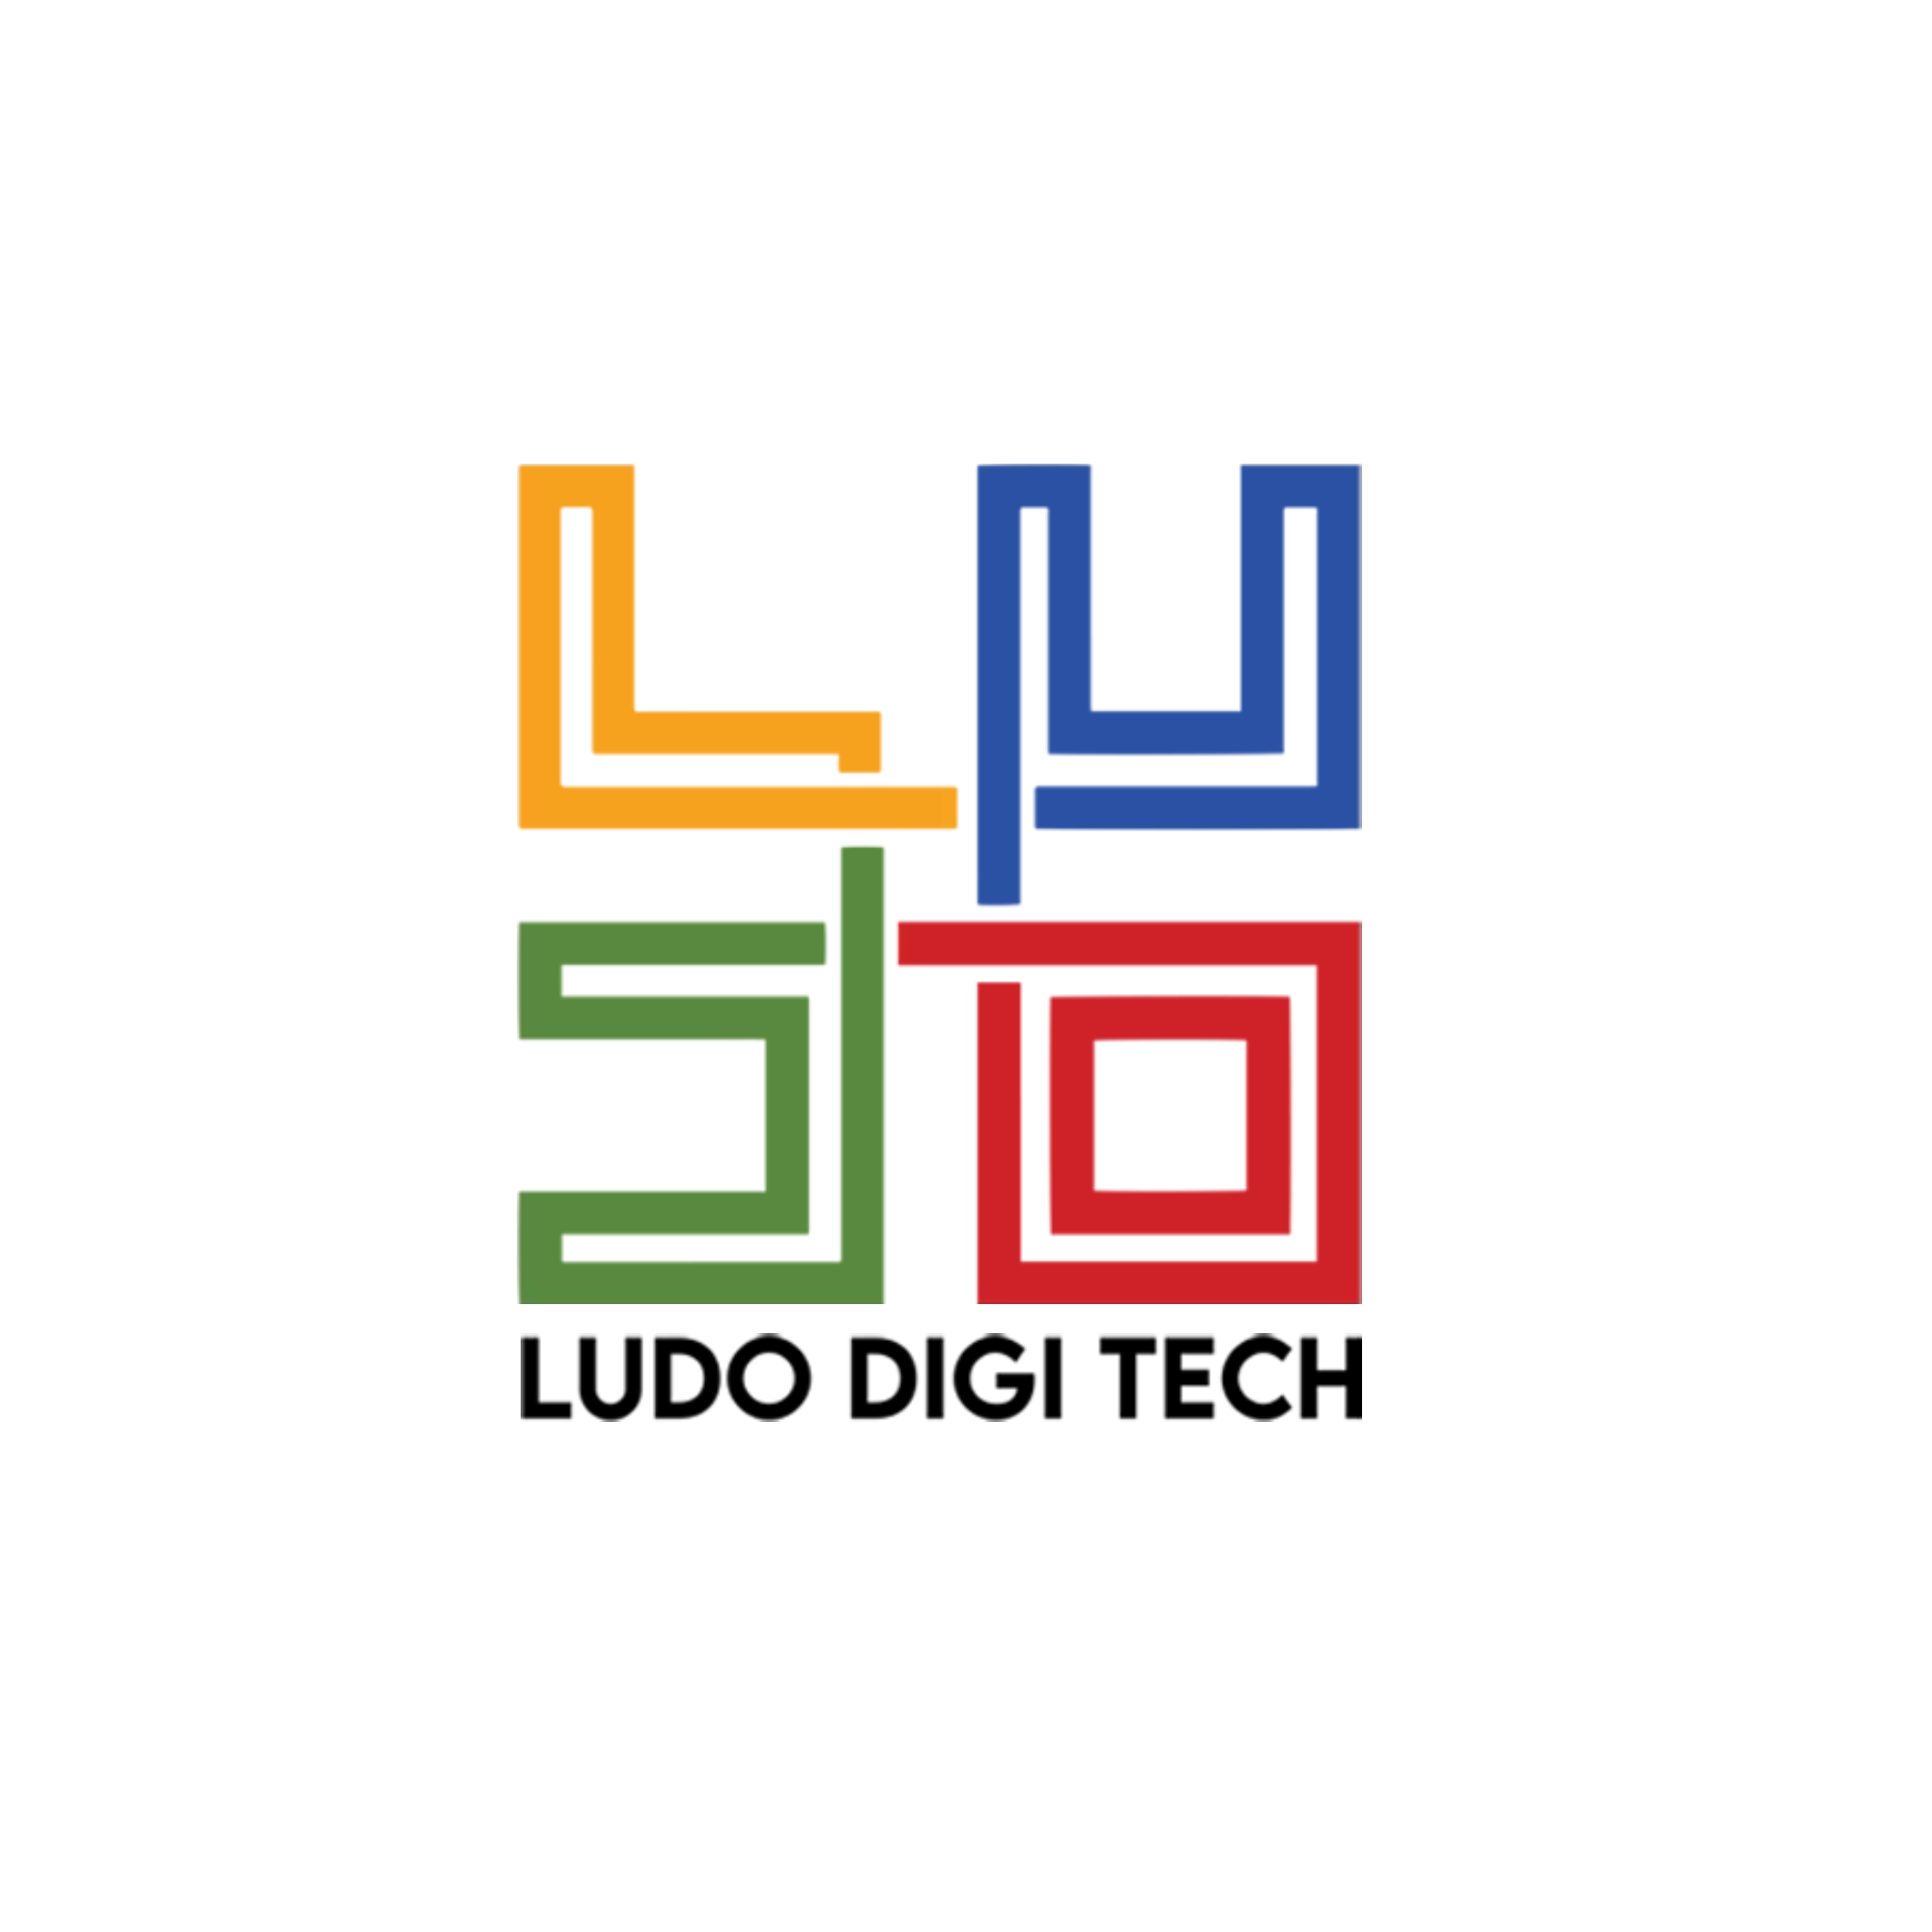 Ludo_digitech-2014 Logo